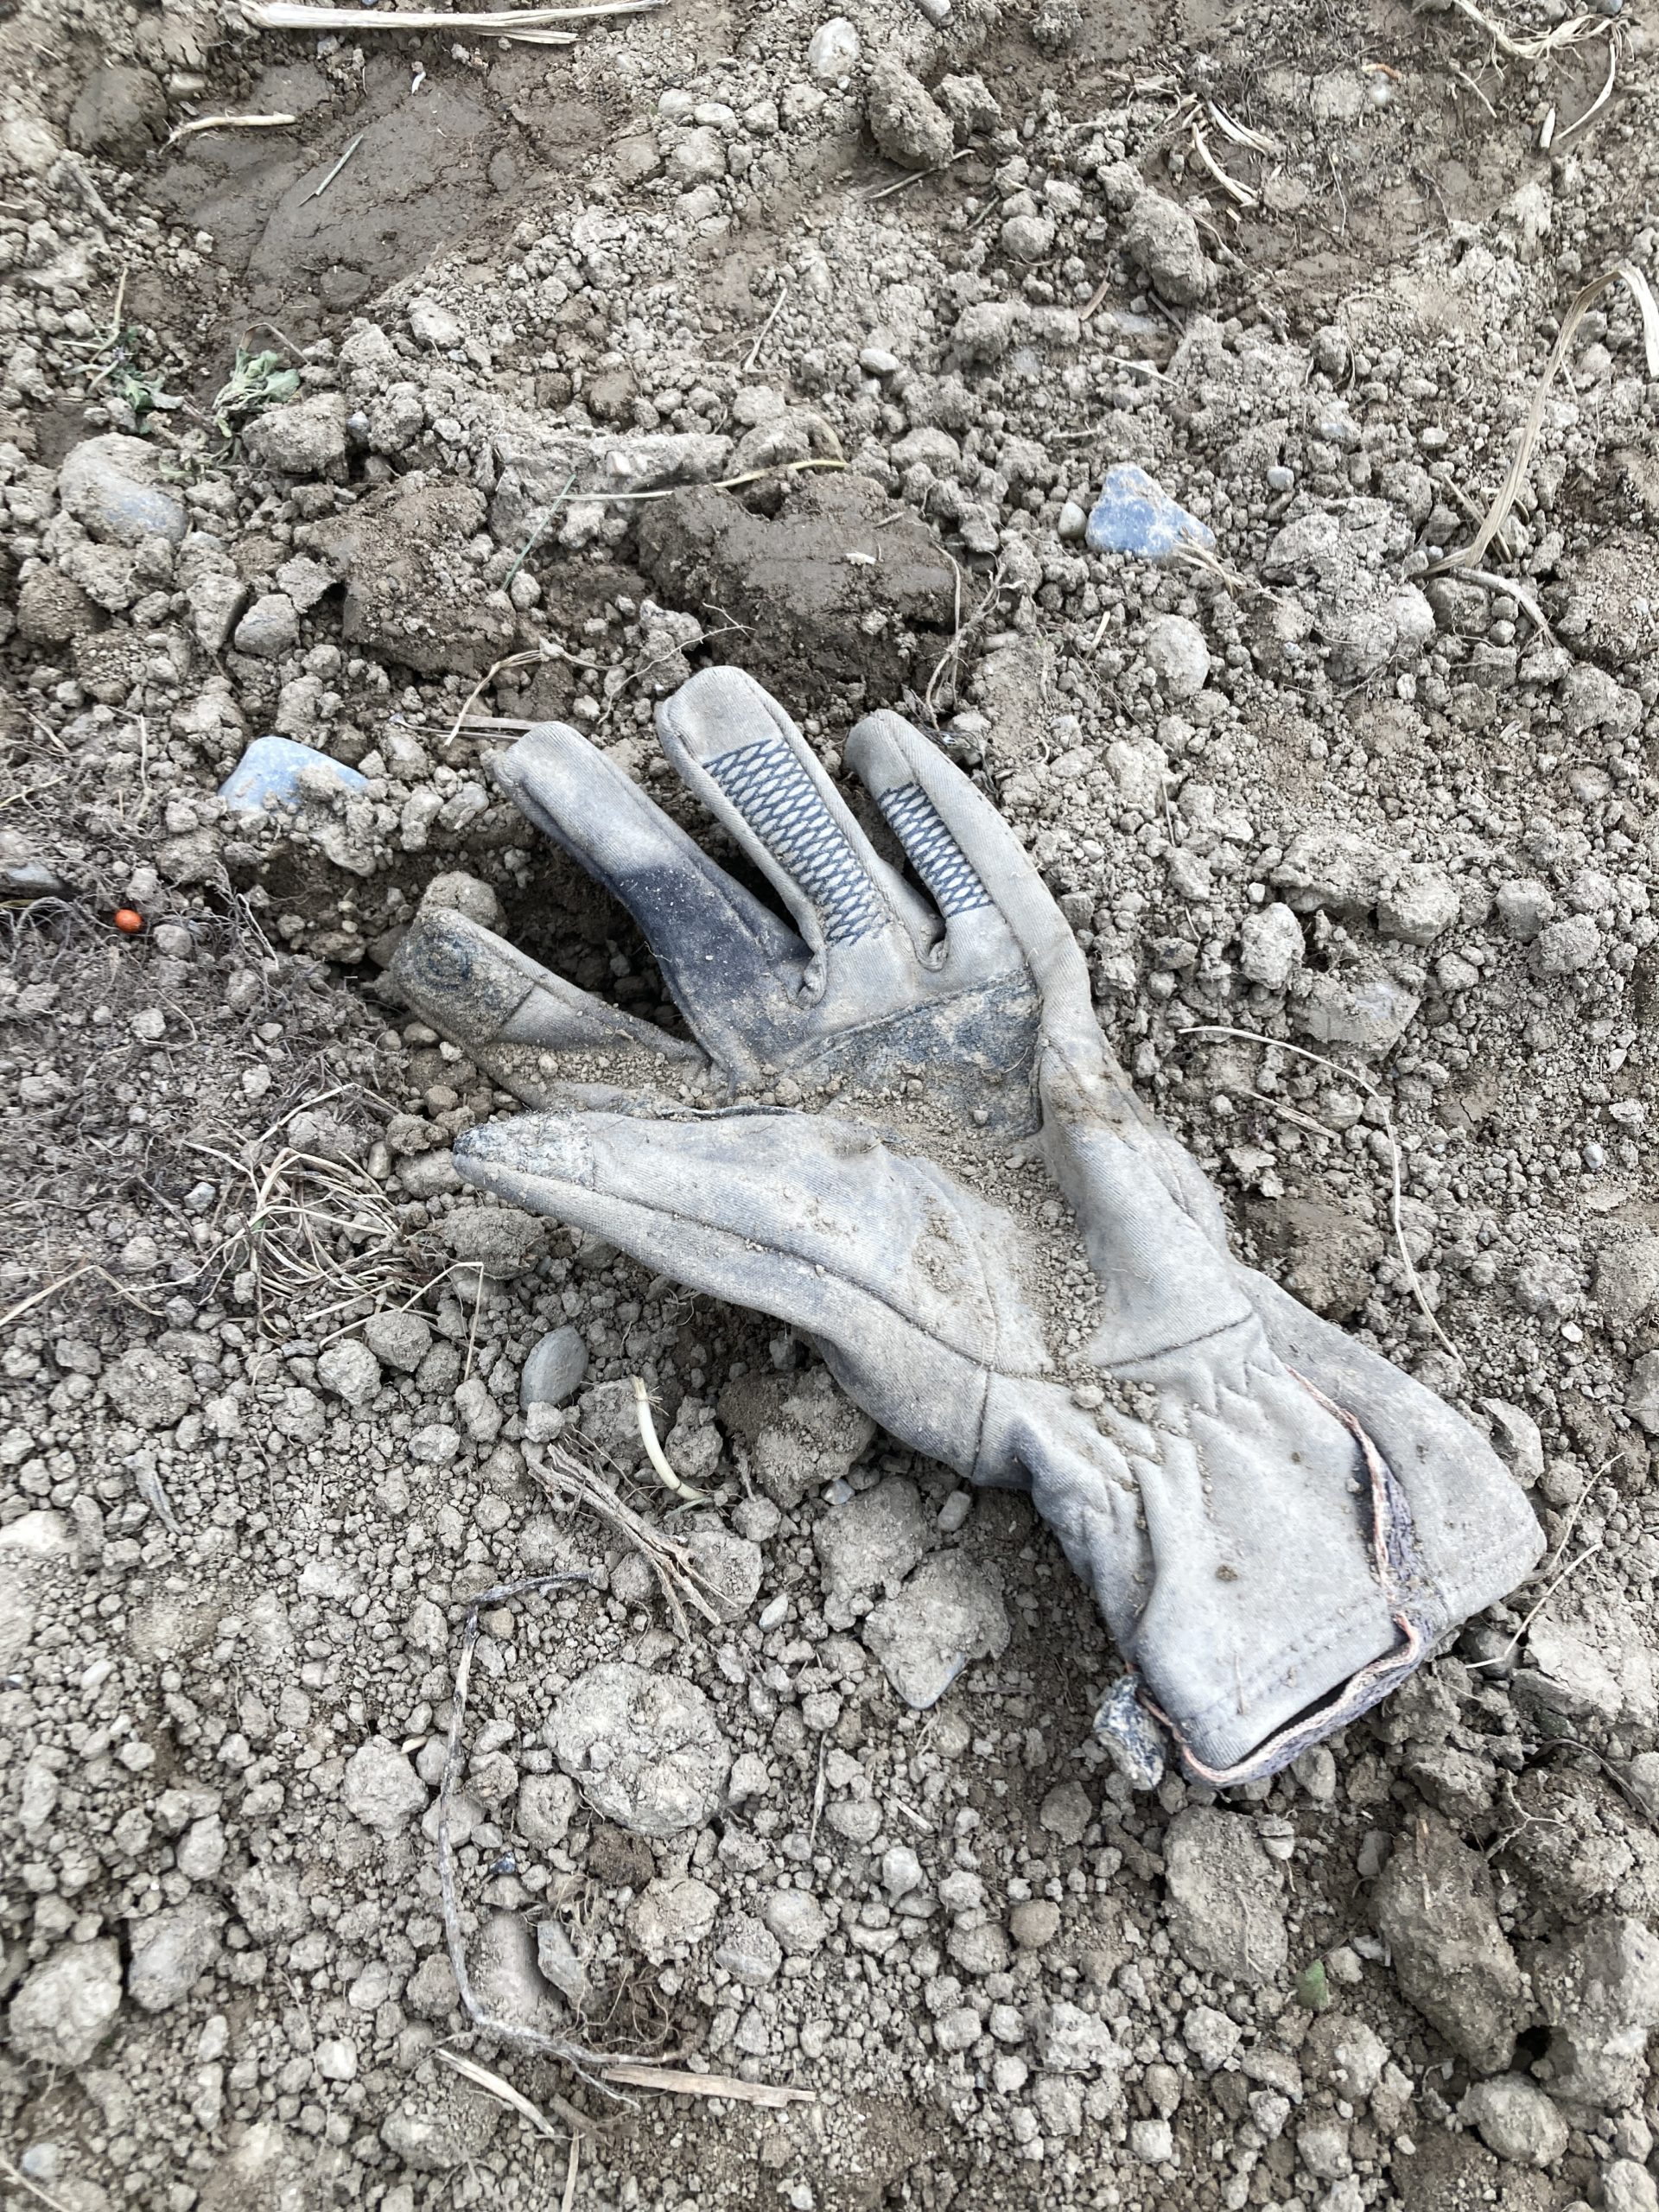 A glove in a field